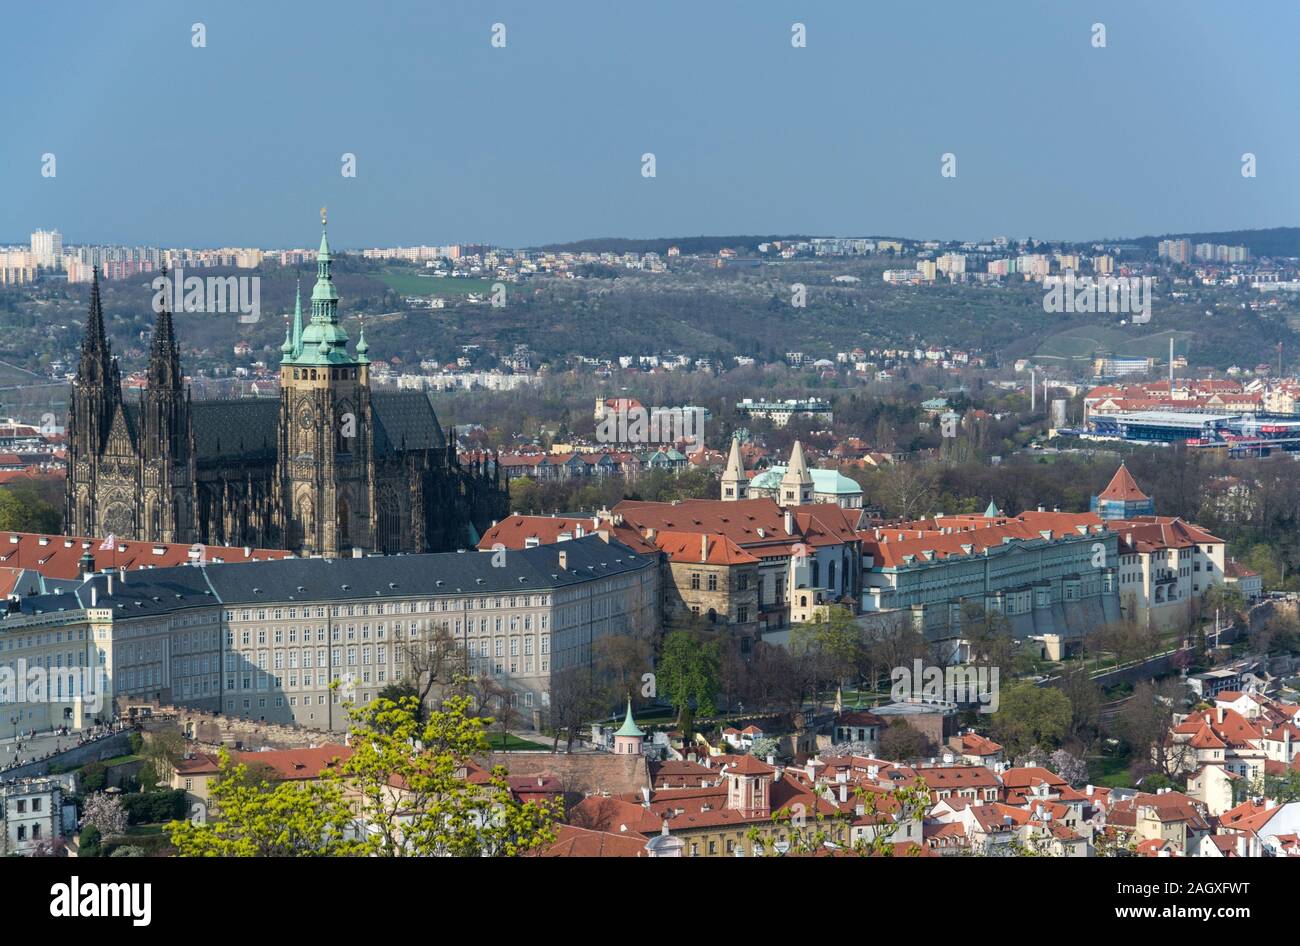 Prag ist die Hauptstadt der Tschechischen Republik und liegt an der Moldau. Die der hundert Tuerme 'Stadt' ist bekannt für den Altstaedter Ring mit bu Foto de stock